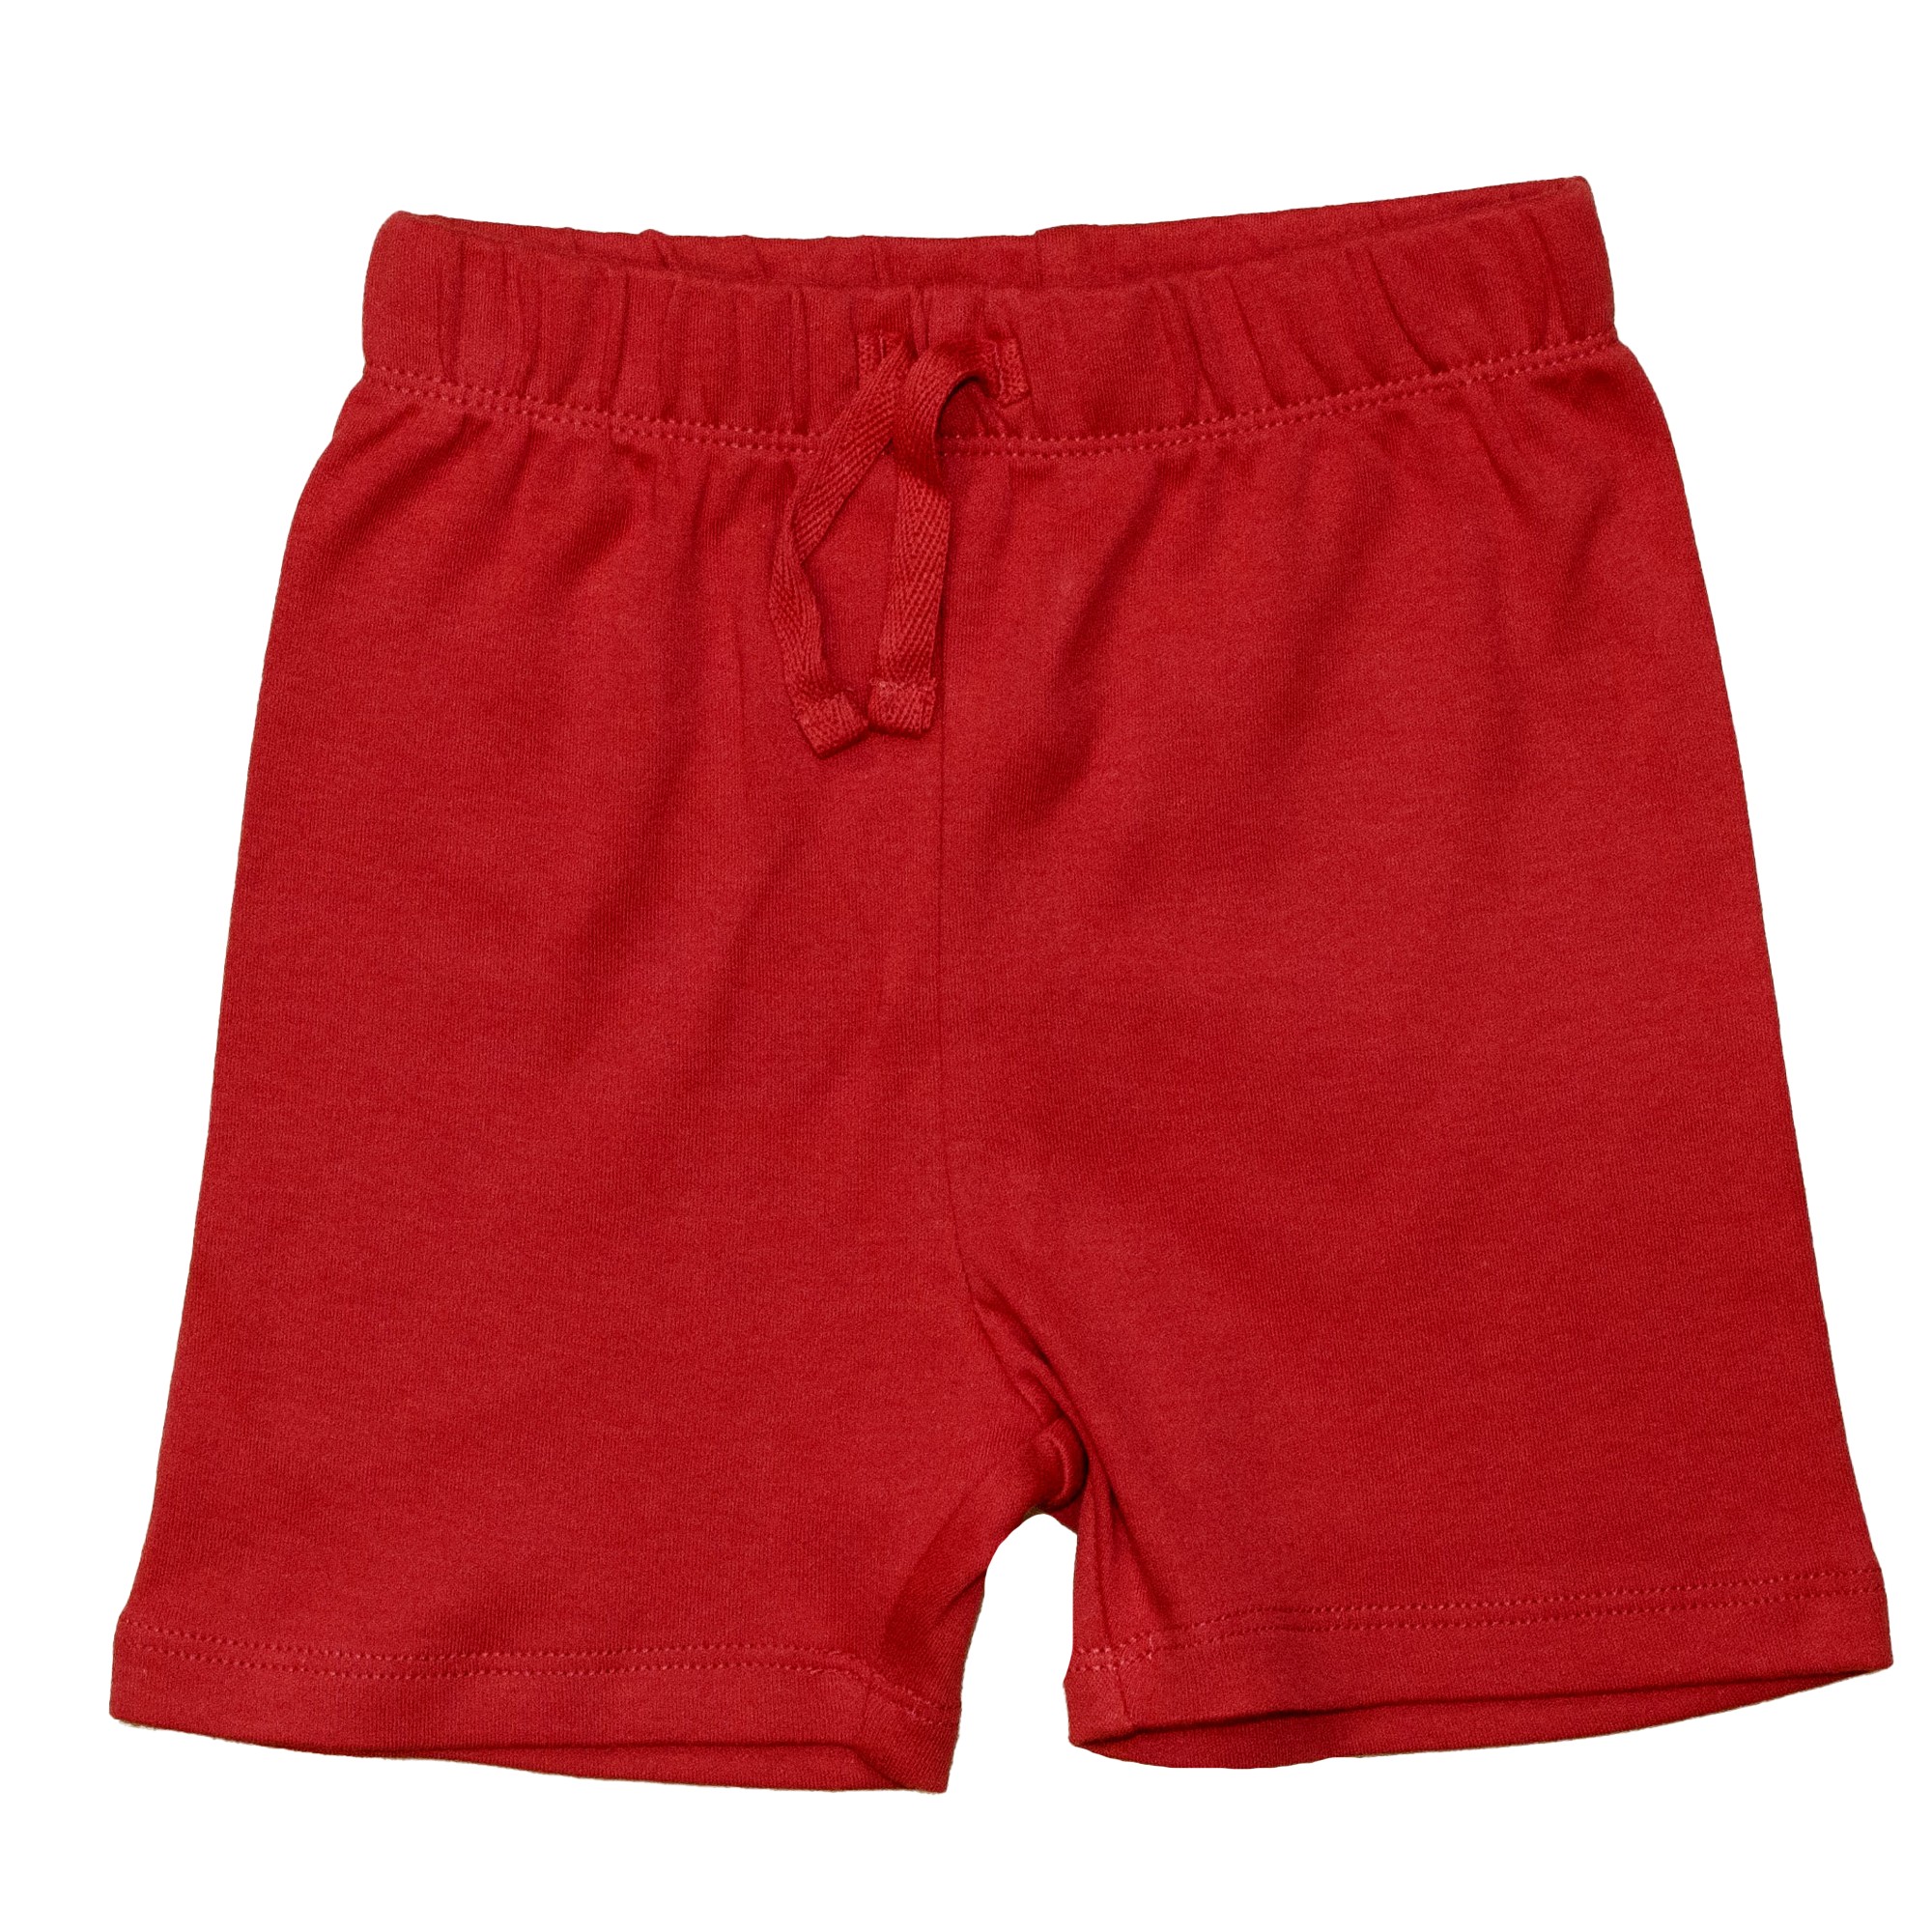 

Шорты для мальчика ( 1 шт ) George красного цвета, короткие трикотажные на лето 1-1.5 года (80-86см) 2276